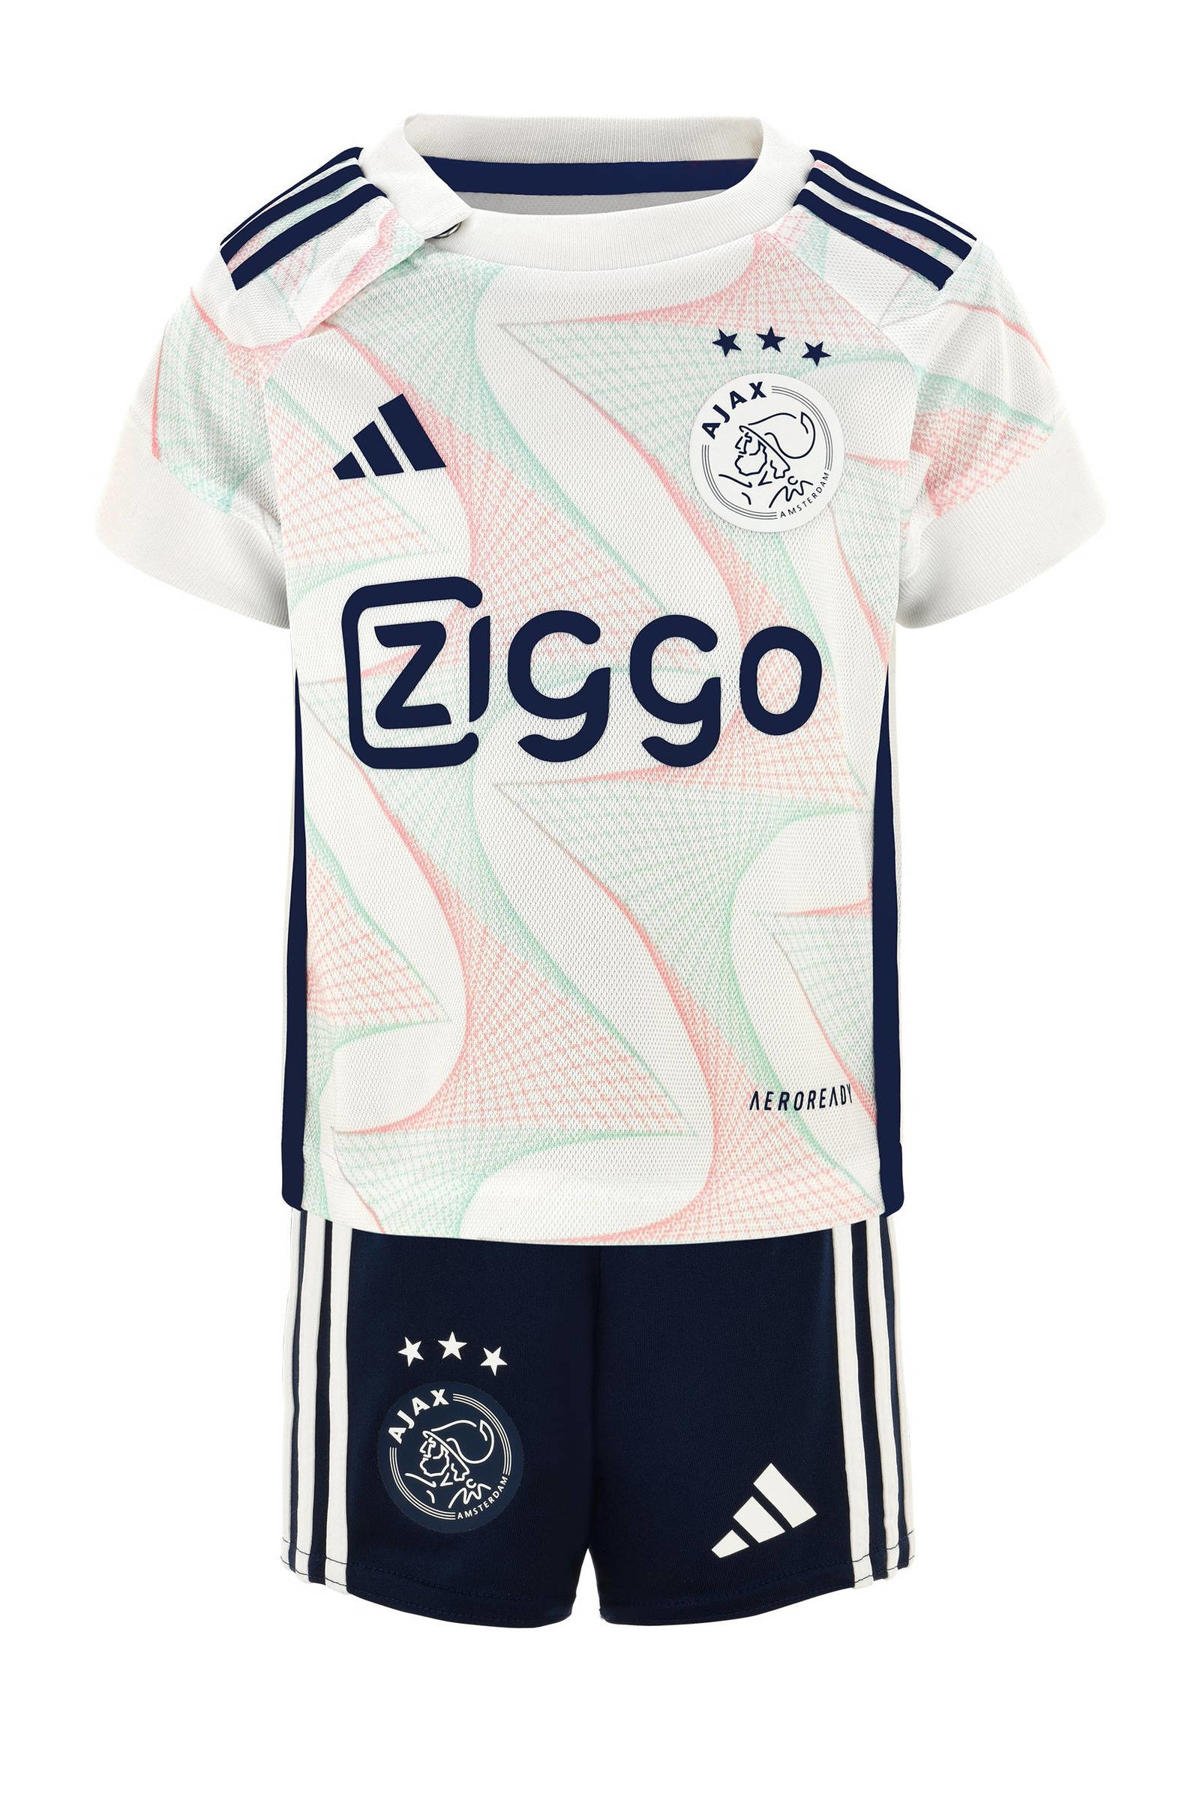 Scheiding Goederen Stratford on Avon adidas Performance Ajax Amsterdam 23/24 T-shirt+short uit baby | wehkamp